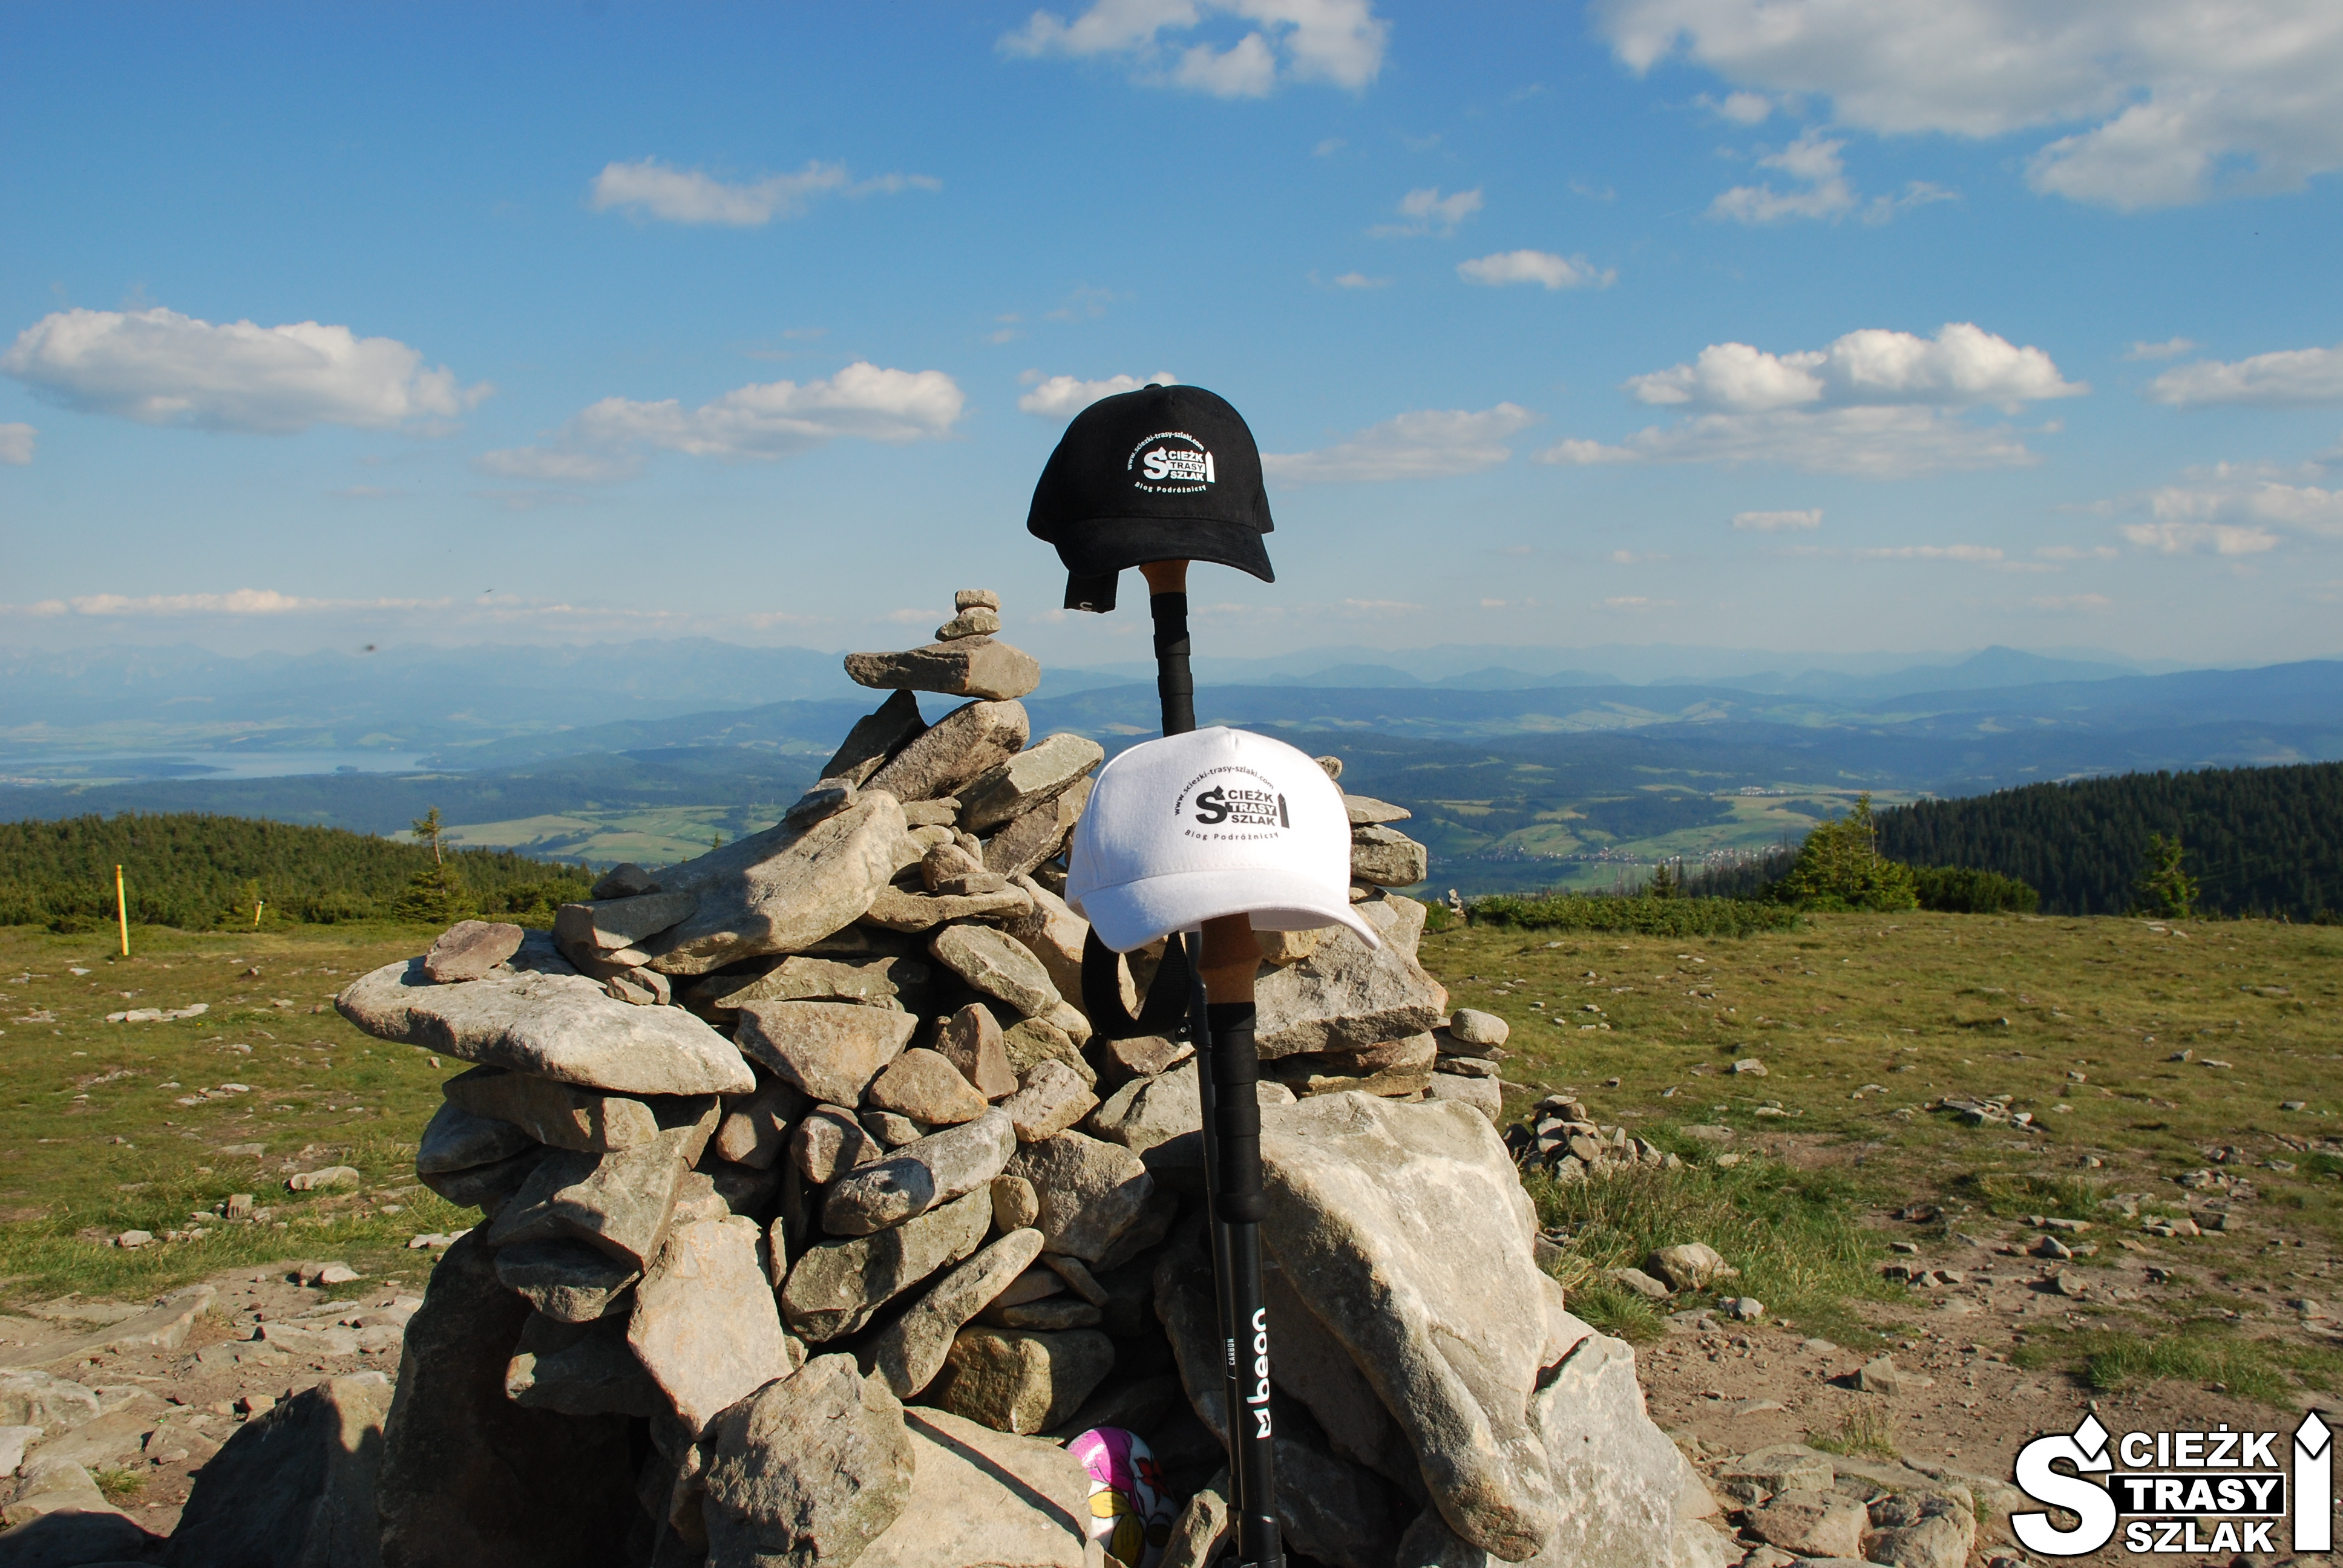 Czapeczki z logo bloga podróżniczego na kijkach trekkingowych opartych o kopiec z kamieni na szczycie Góry Pilsko